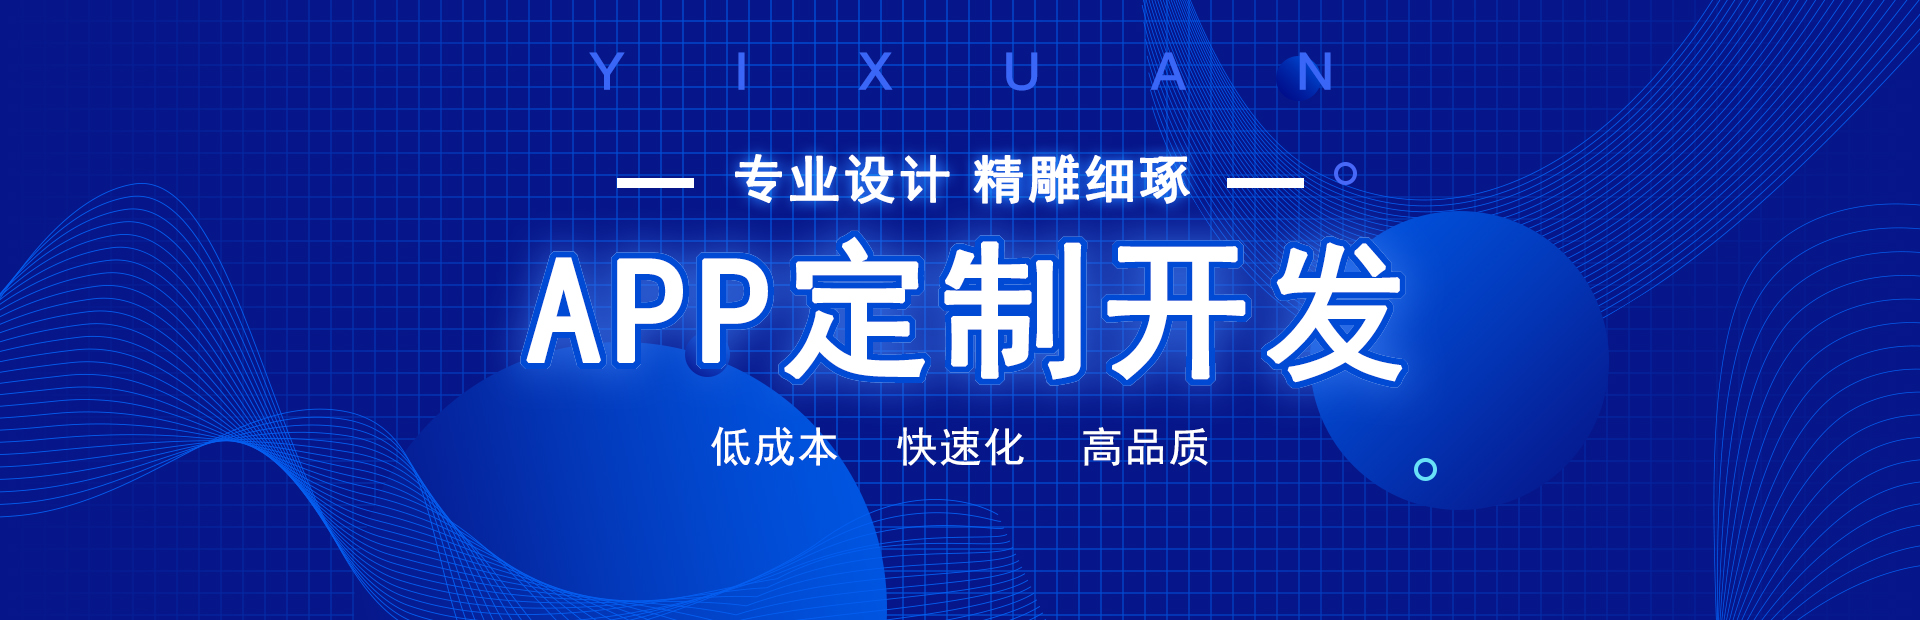 专业的郑州app开发制作、郑州小程序开发公司，原生定制，满足企业客户的一切需求